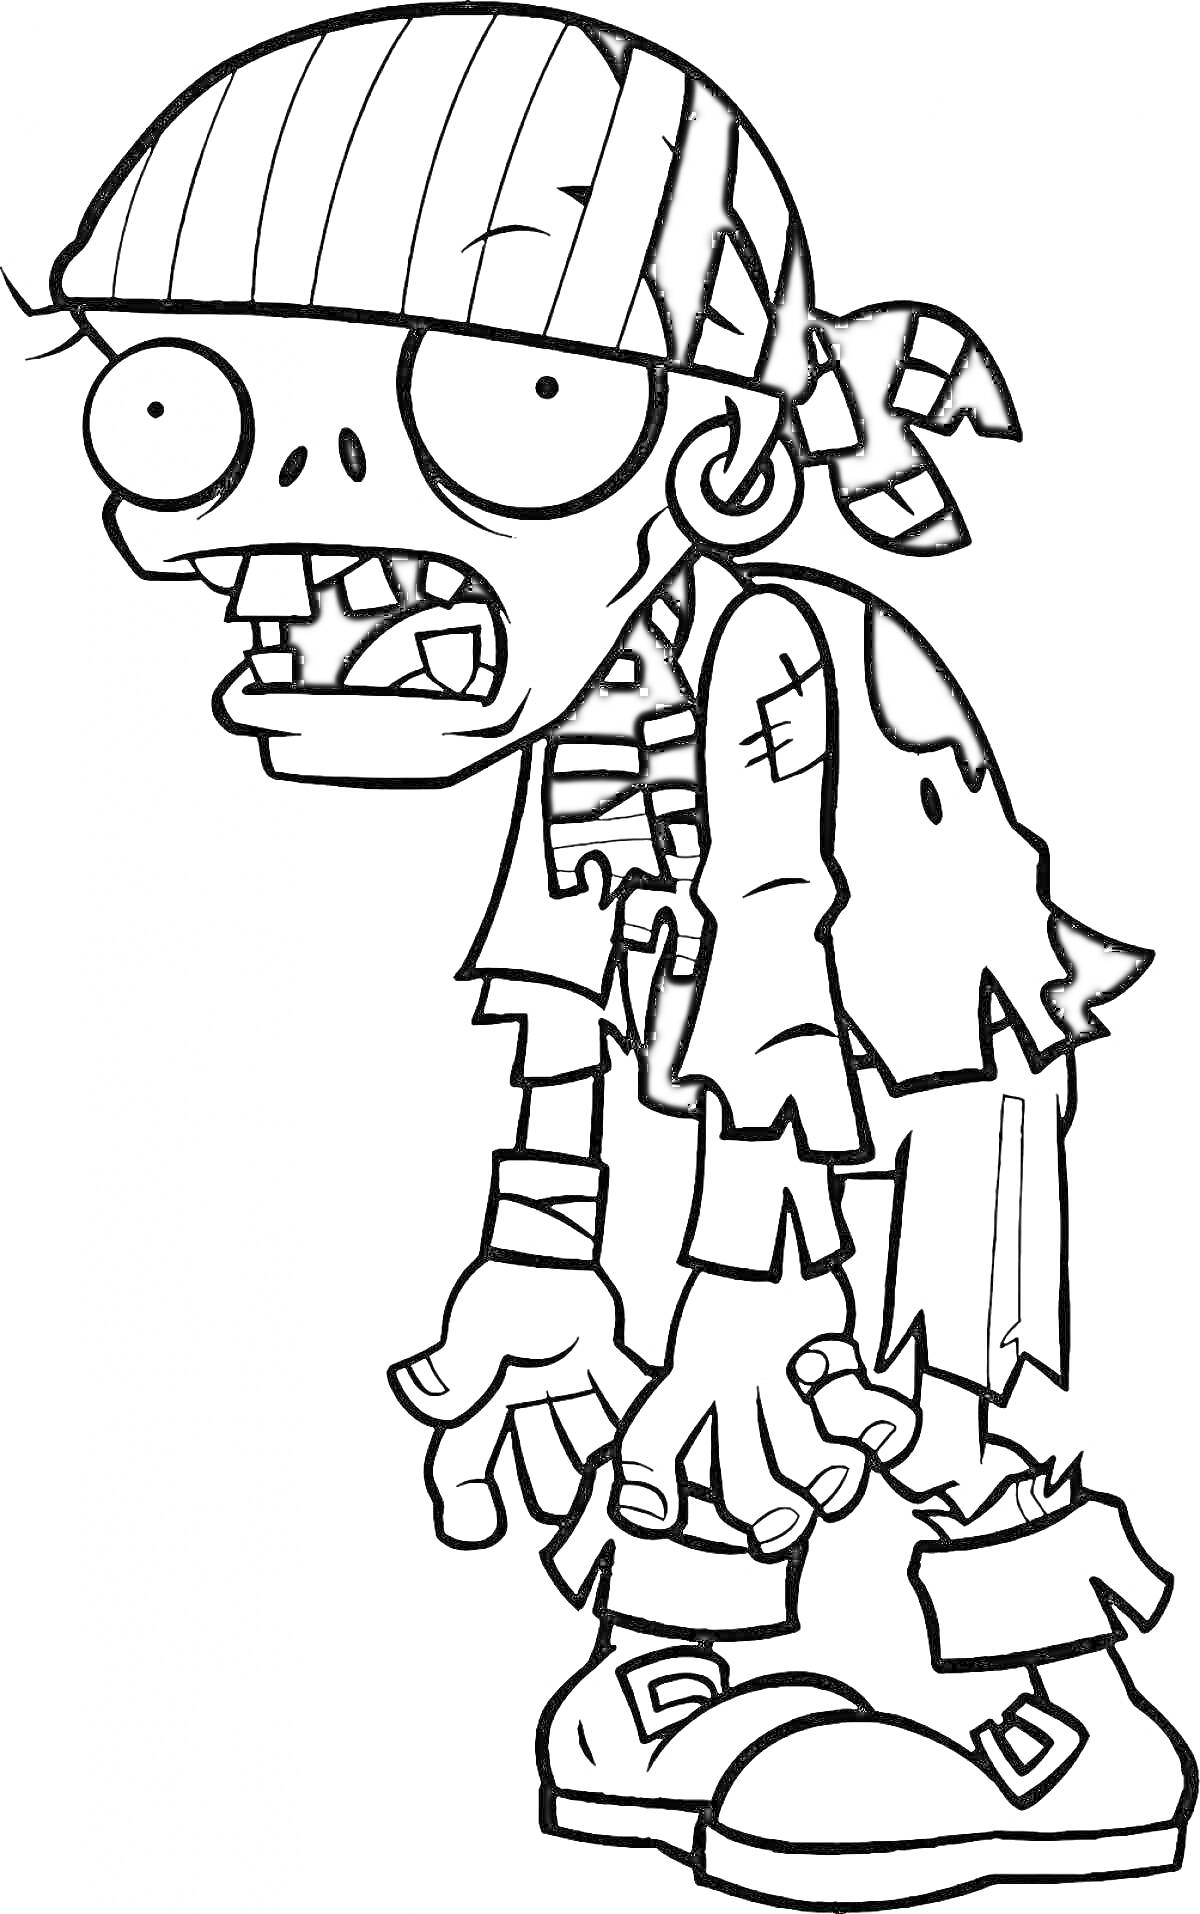 Раскраска Зомби с повязкой на голове и в поношенной одежде